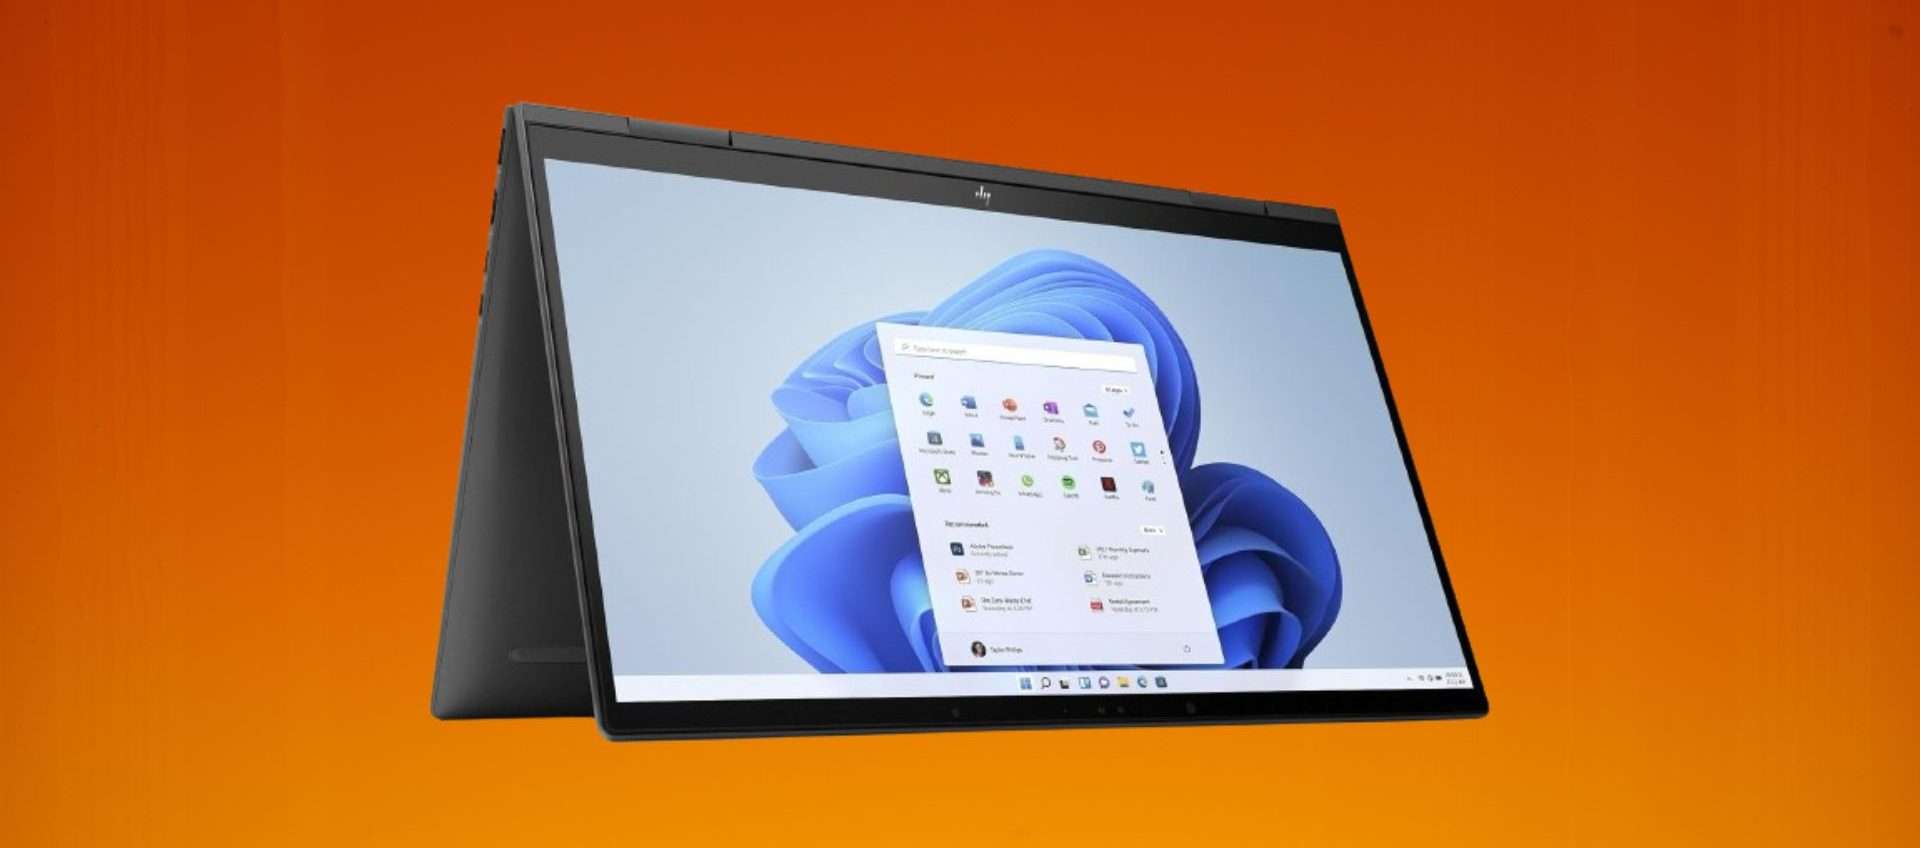 HP Pavilion x360 in super offerta: schermo touch e Windows Home S